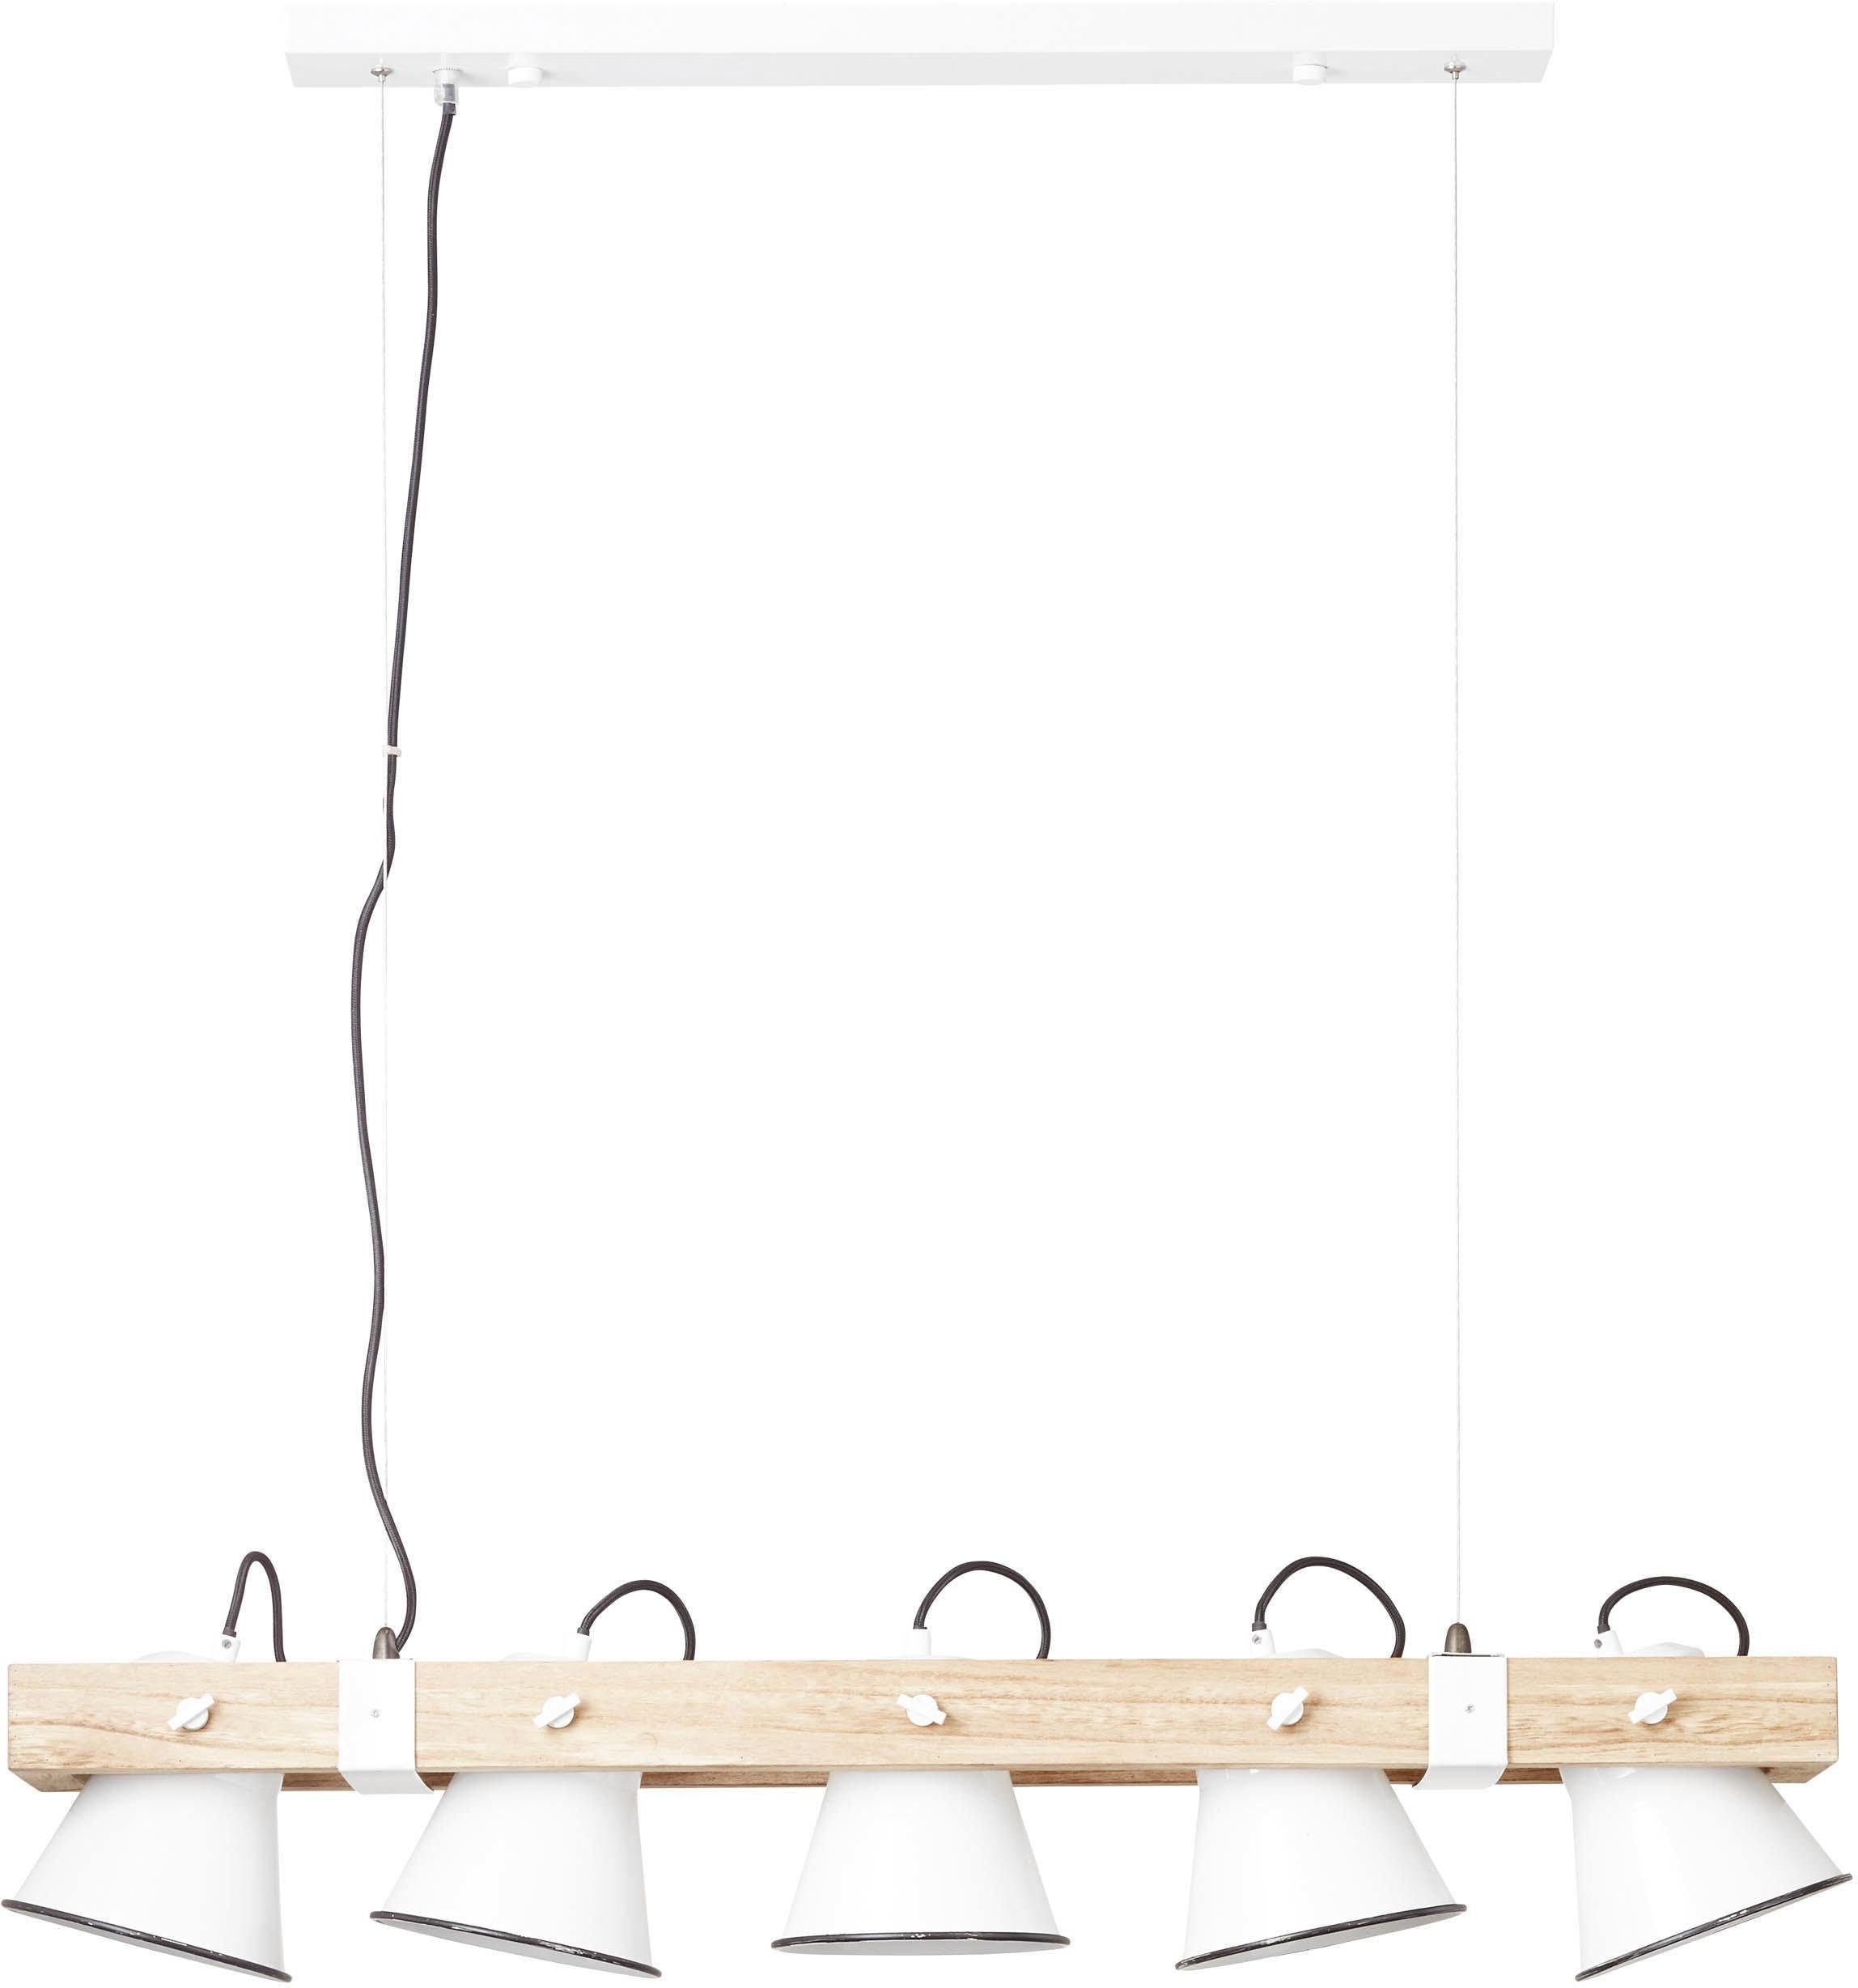 Papierlampe weiß mit dunklen Streifen, mit Holzstandfuß, Höhe: 33 cm